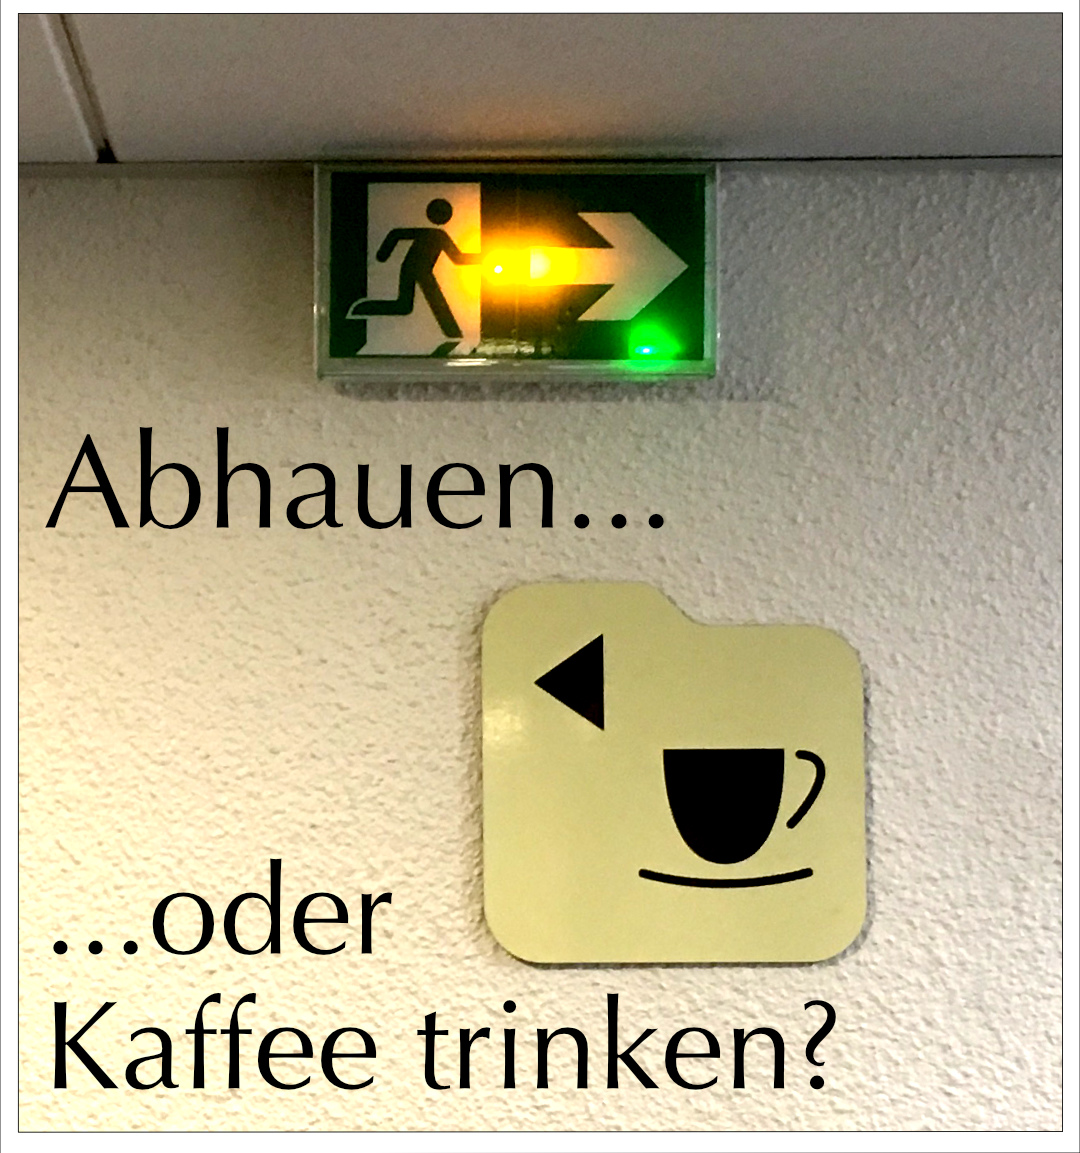 Abhauen oder Kaffe trinken?